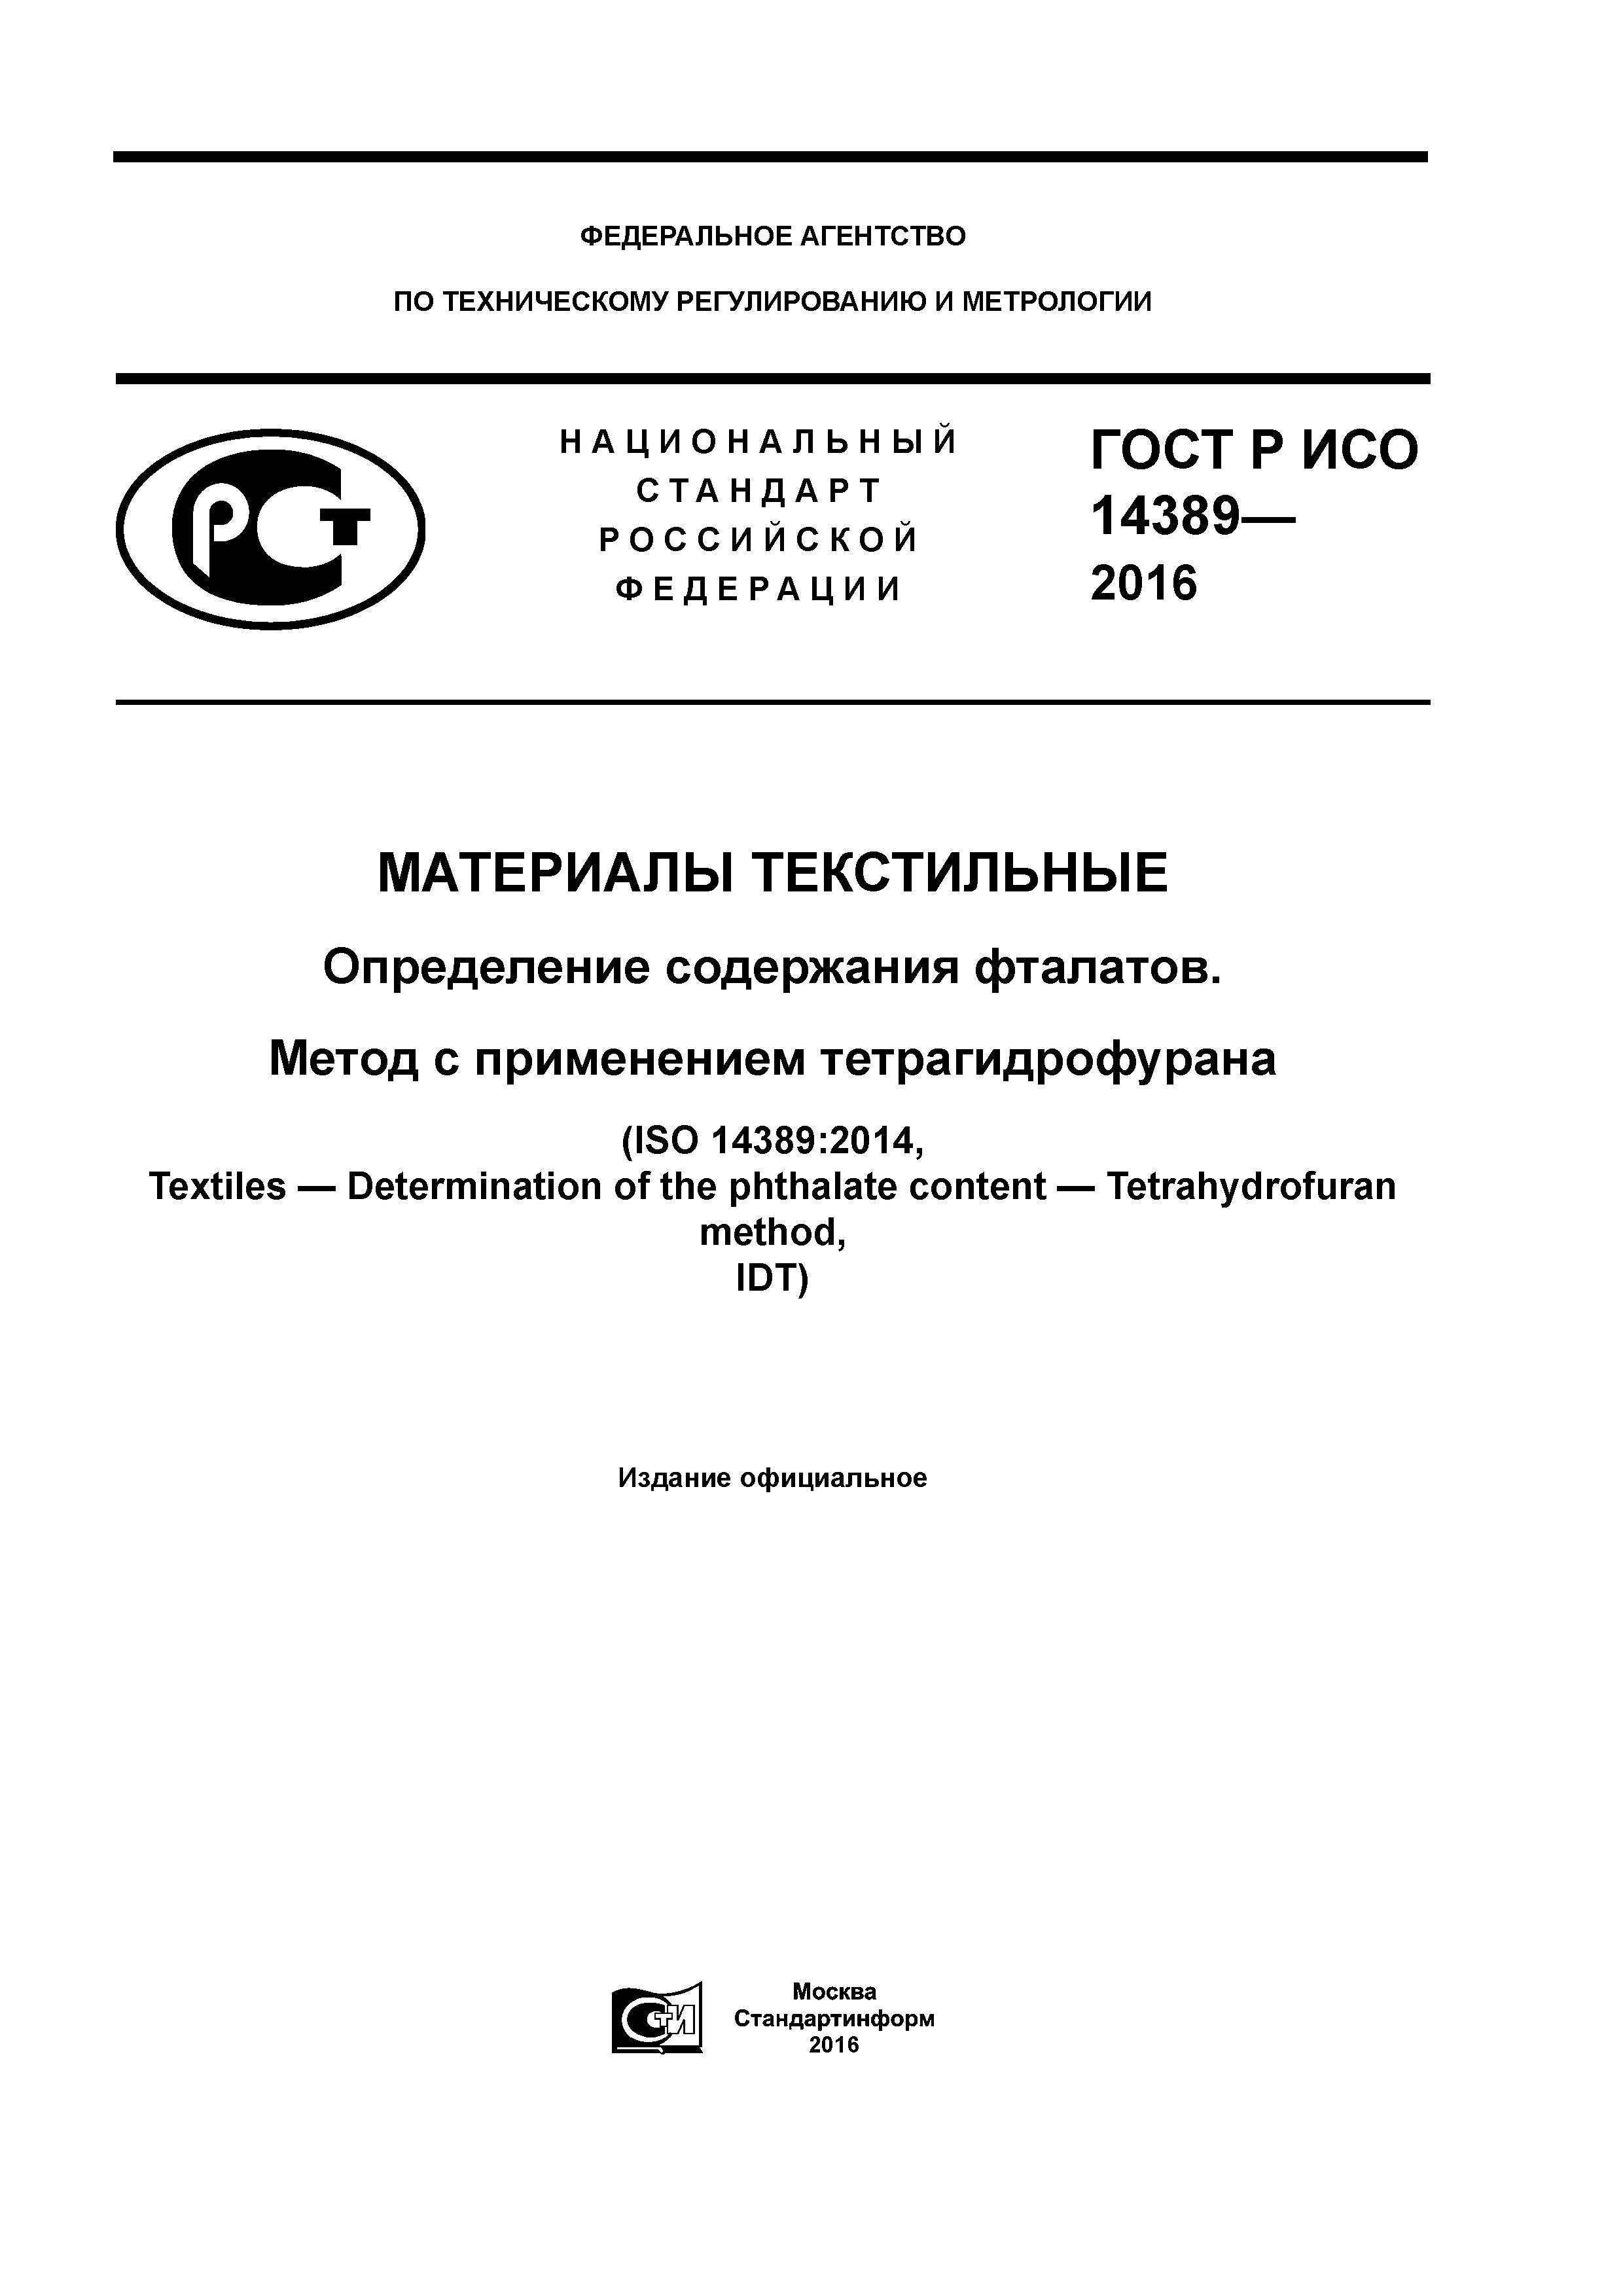 ГОСТ Р ИСО 14389-2016